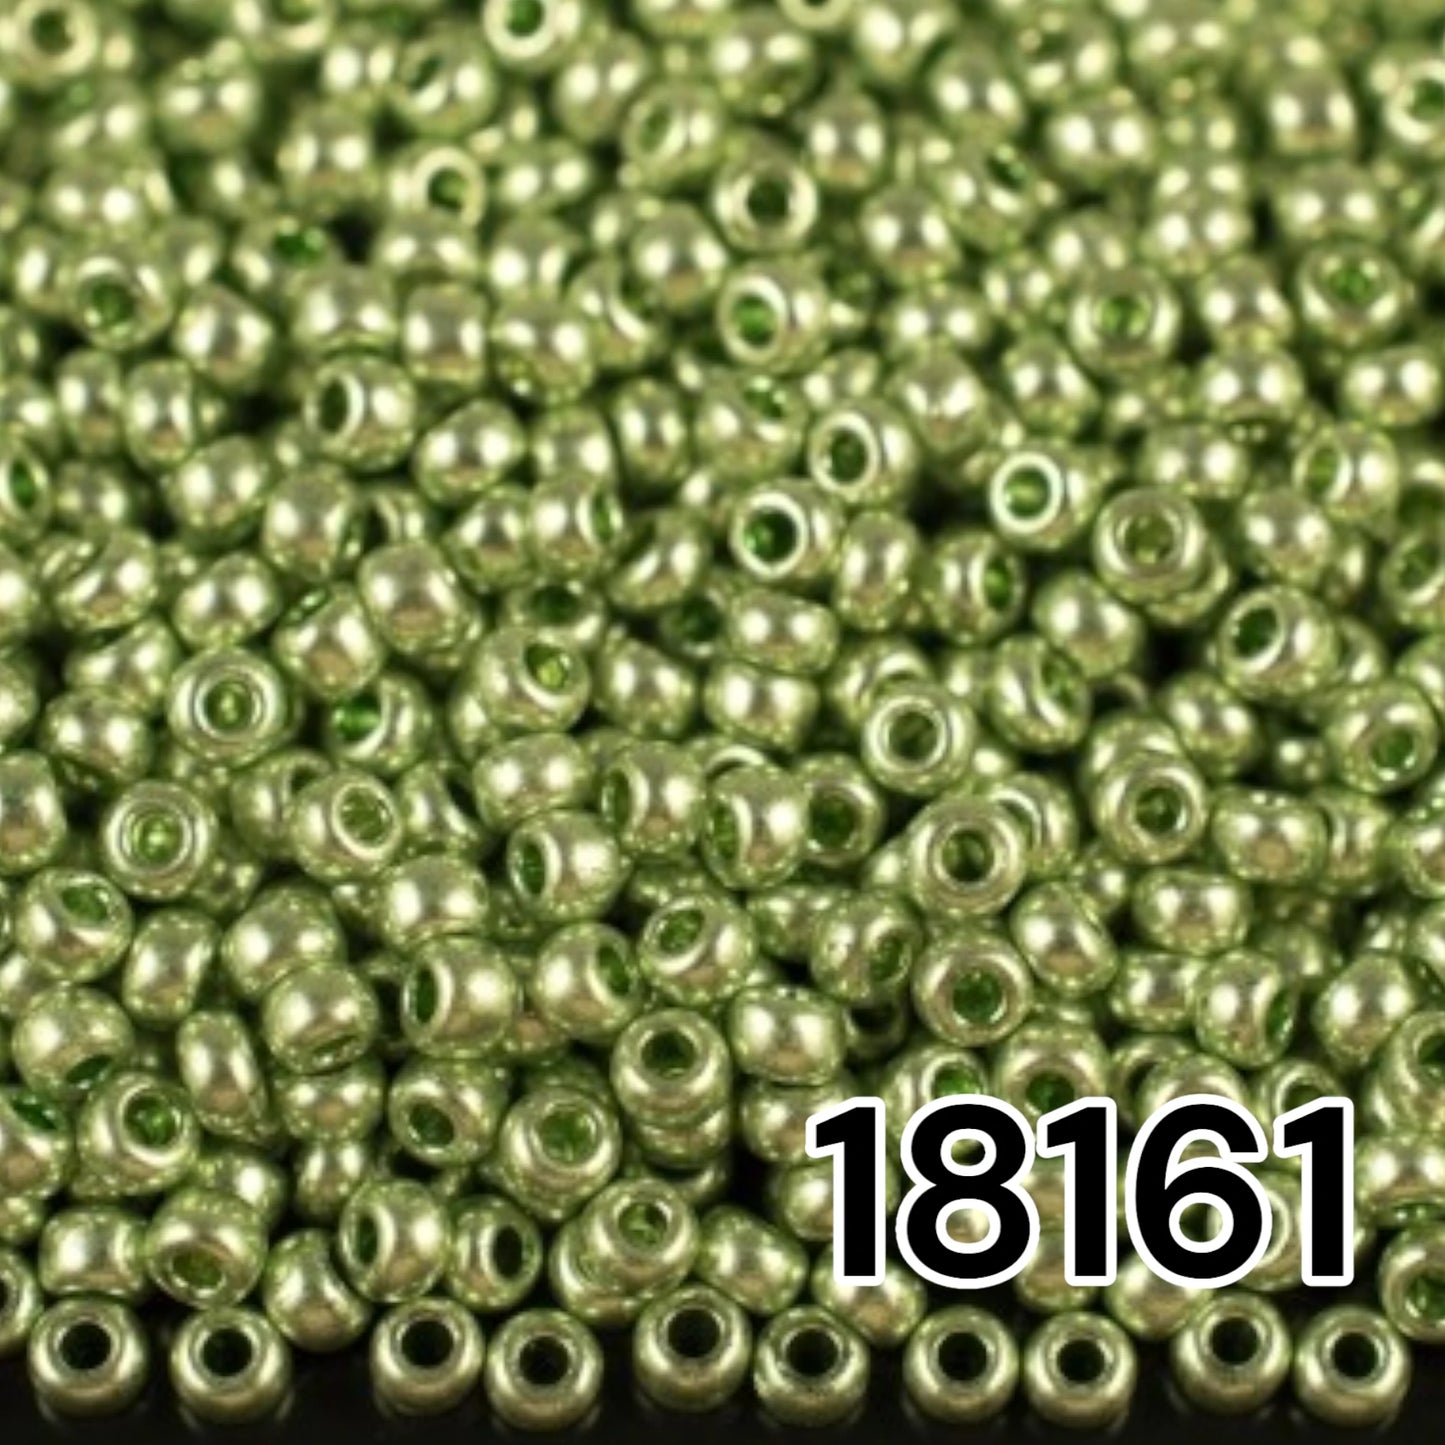 18161 Tschechische Rocailles PRECIOSA rund 10/0 Grün metallic. Metallisch - Solgel.